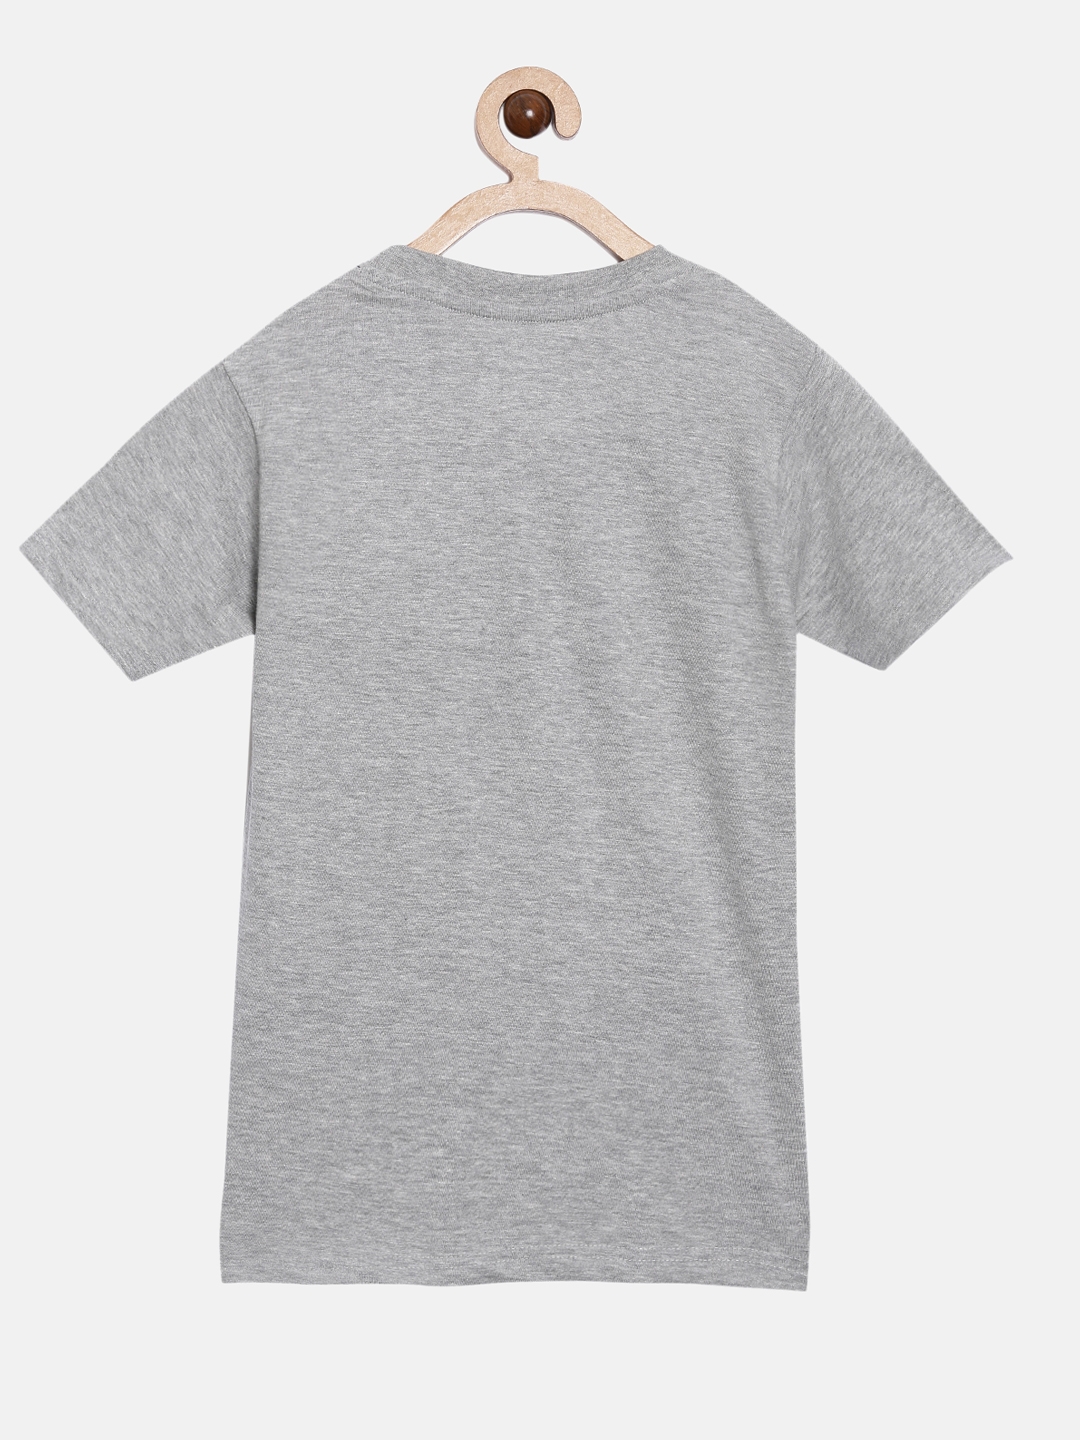 Peejas | Peejas 100% Cotton Boys  Printed Round Neck Short Sleeves Tshirts 4